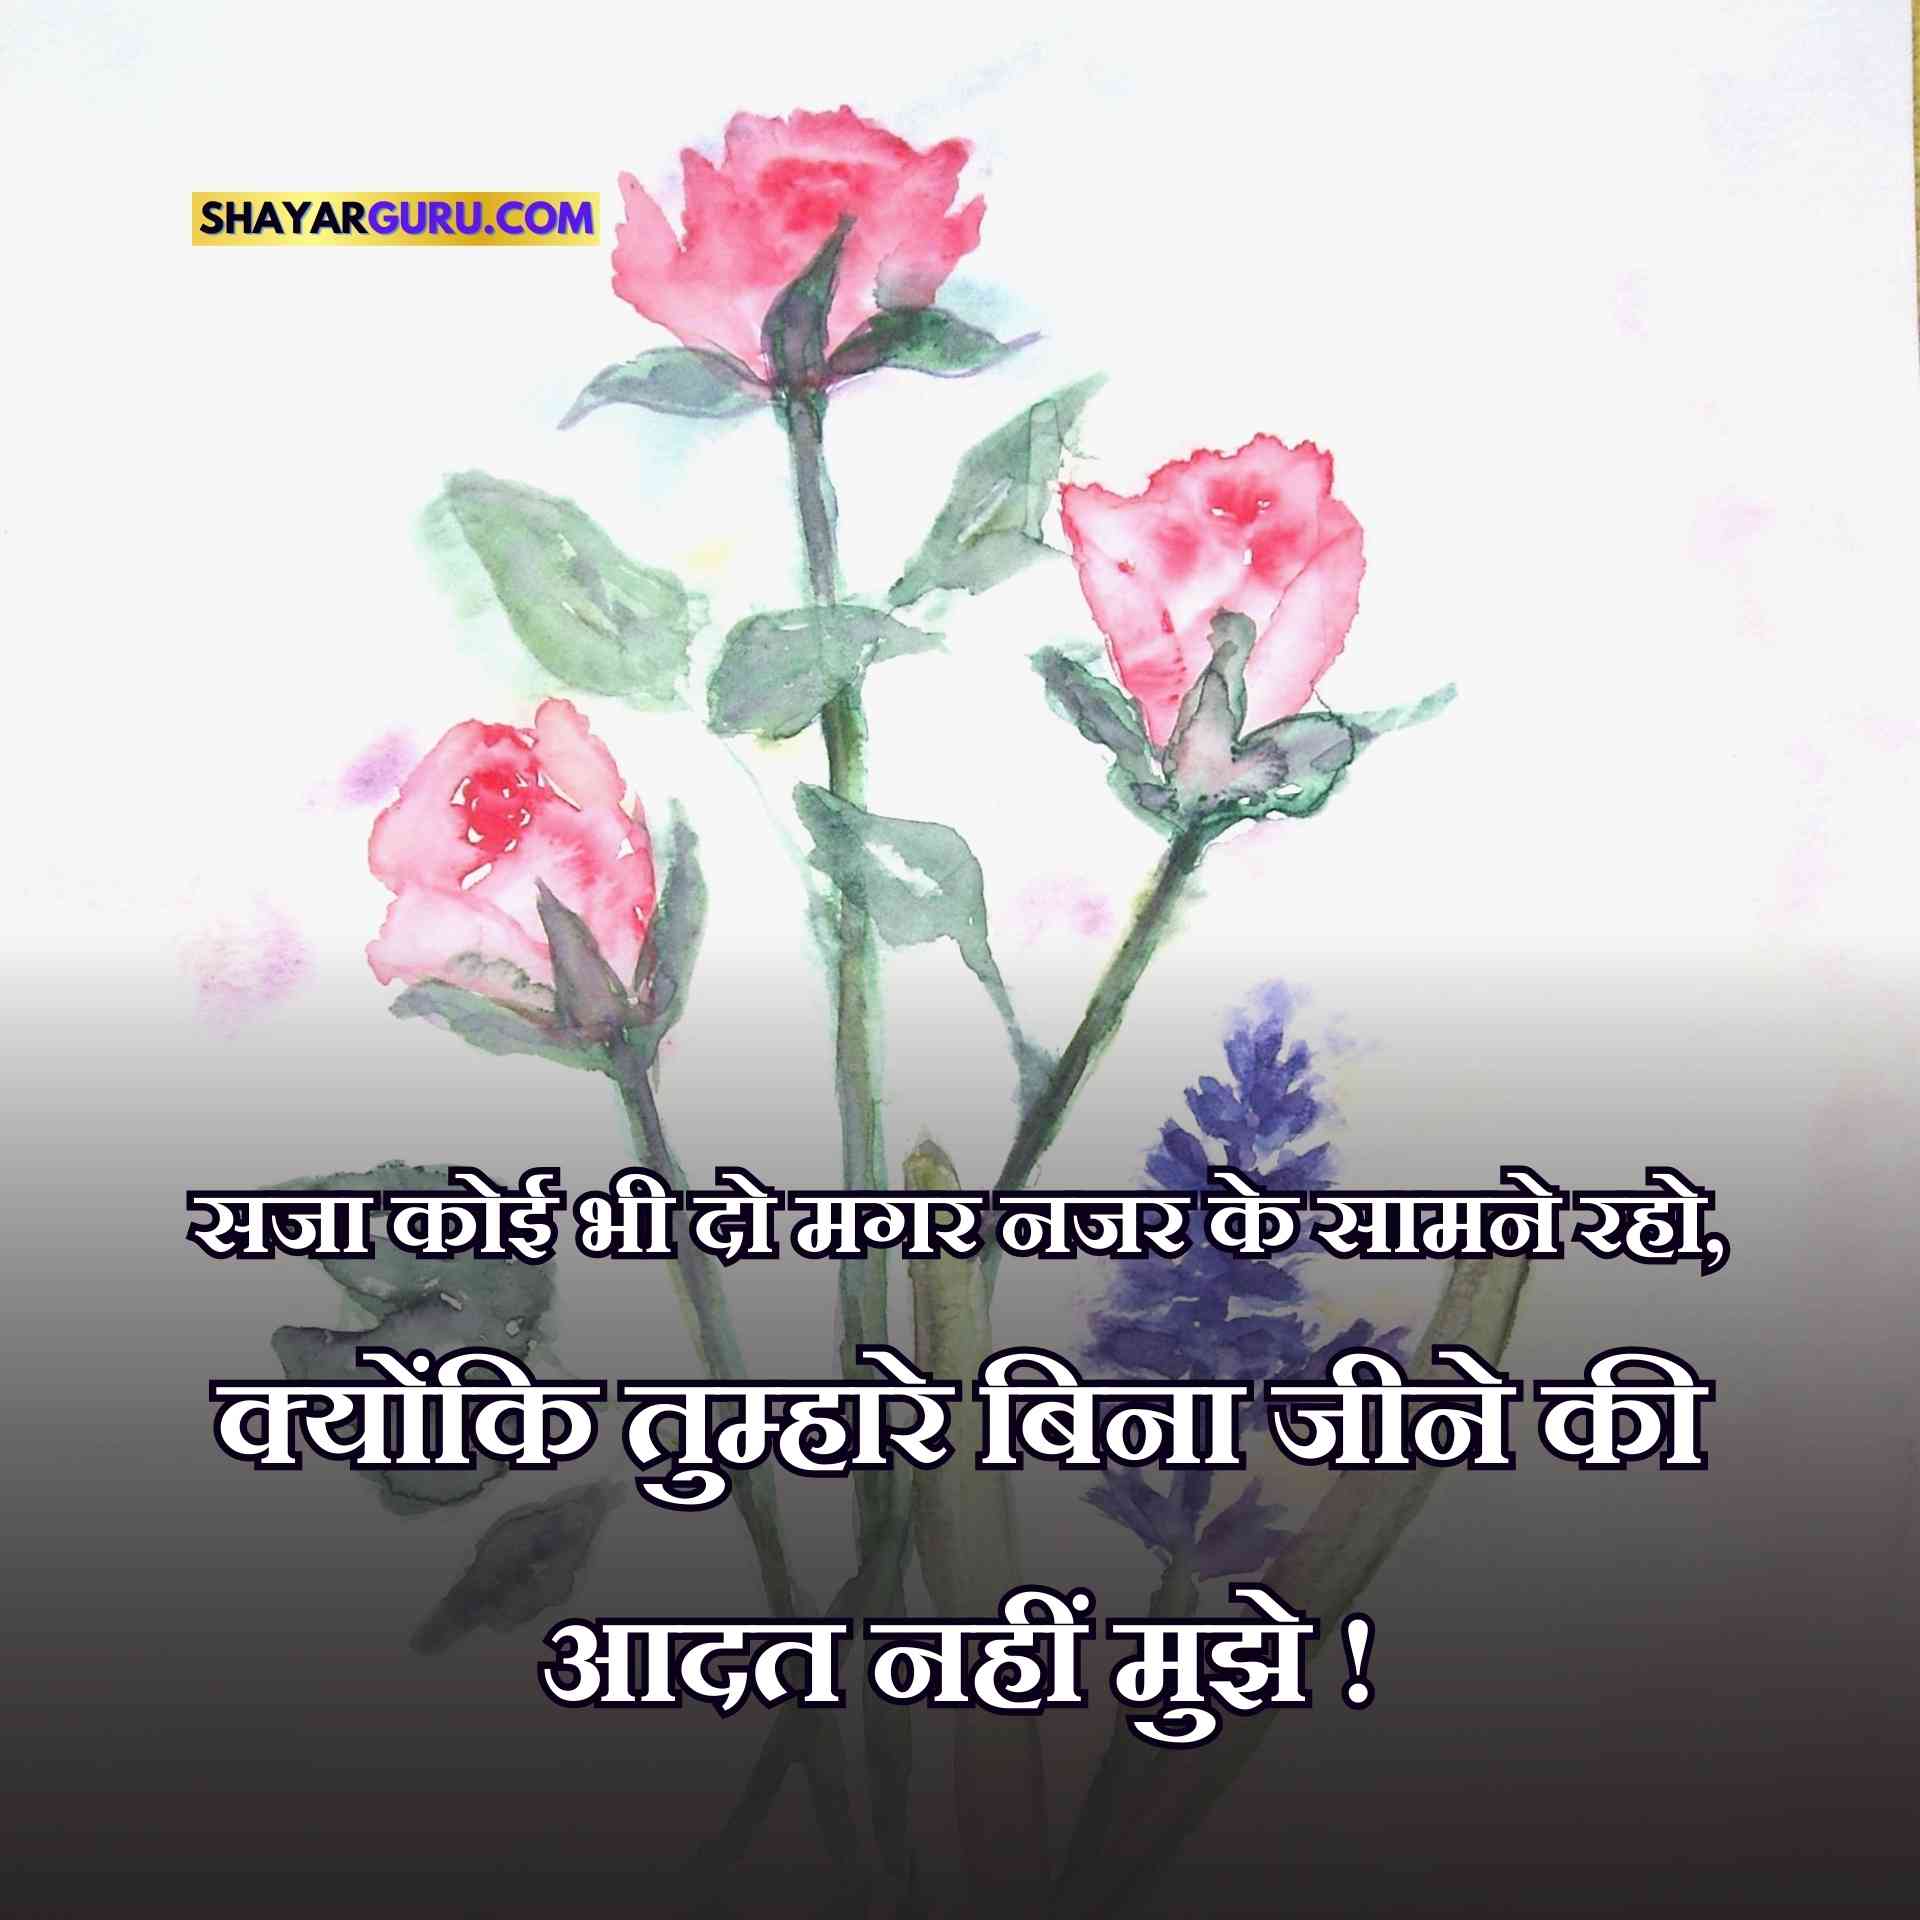 Shero Shayari in Hindi Image